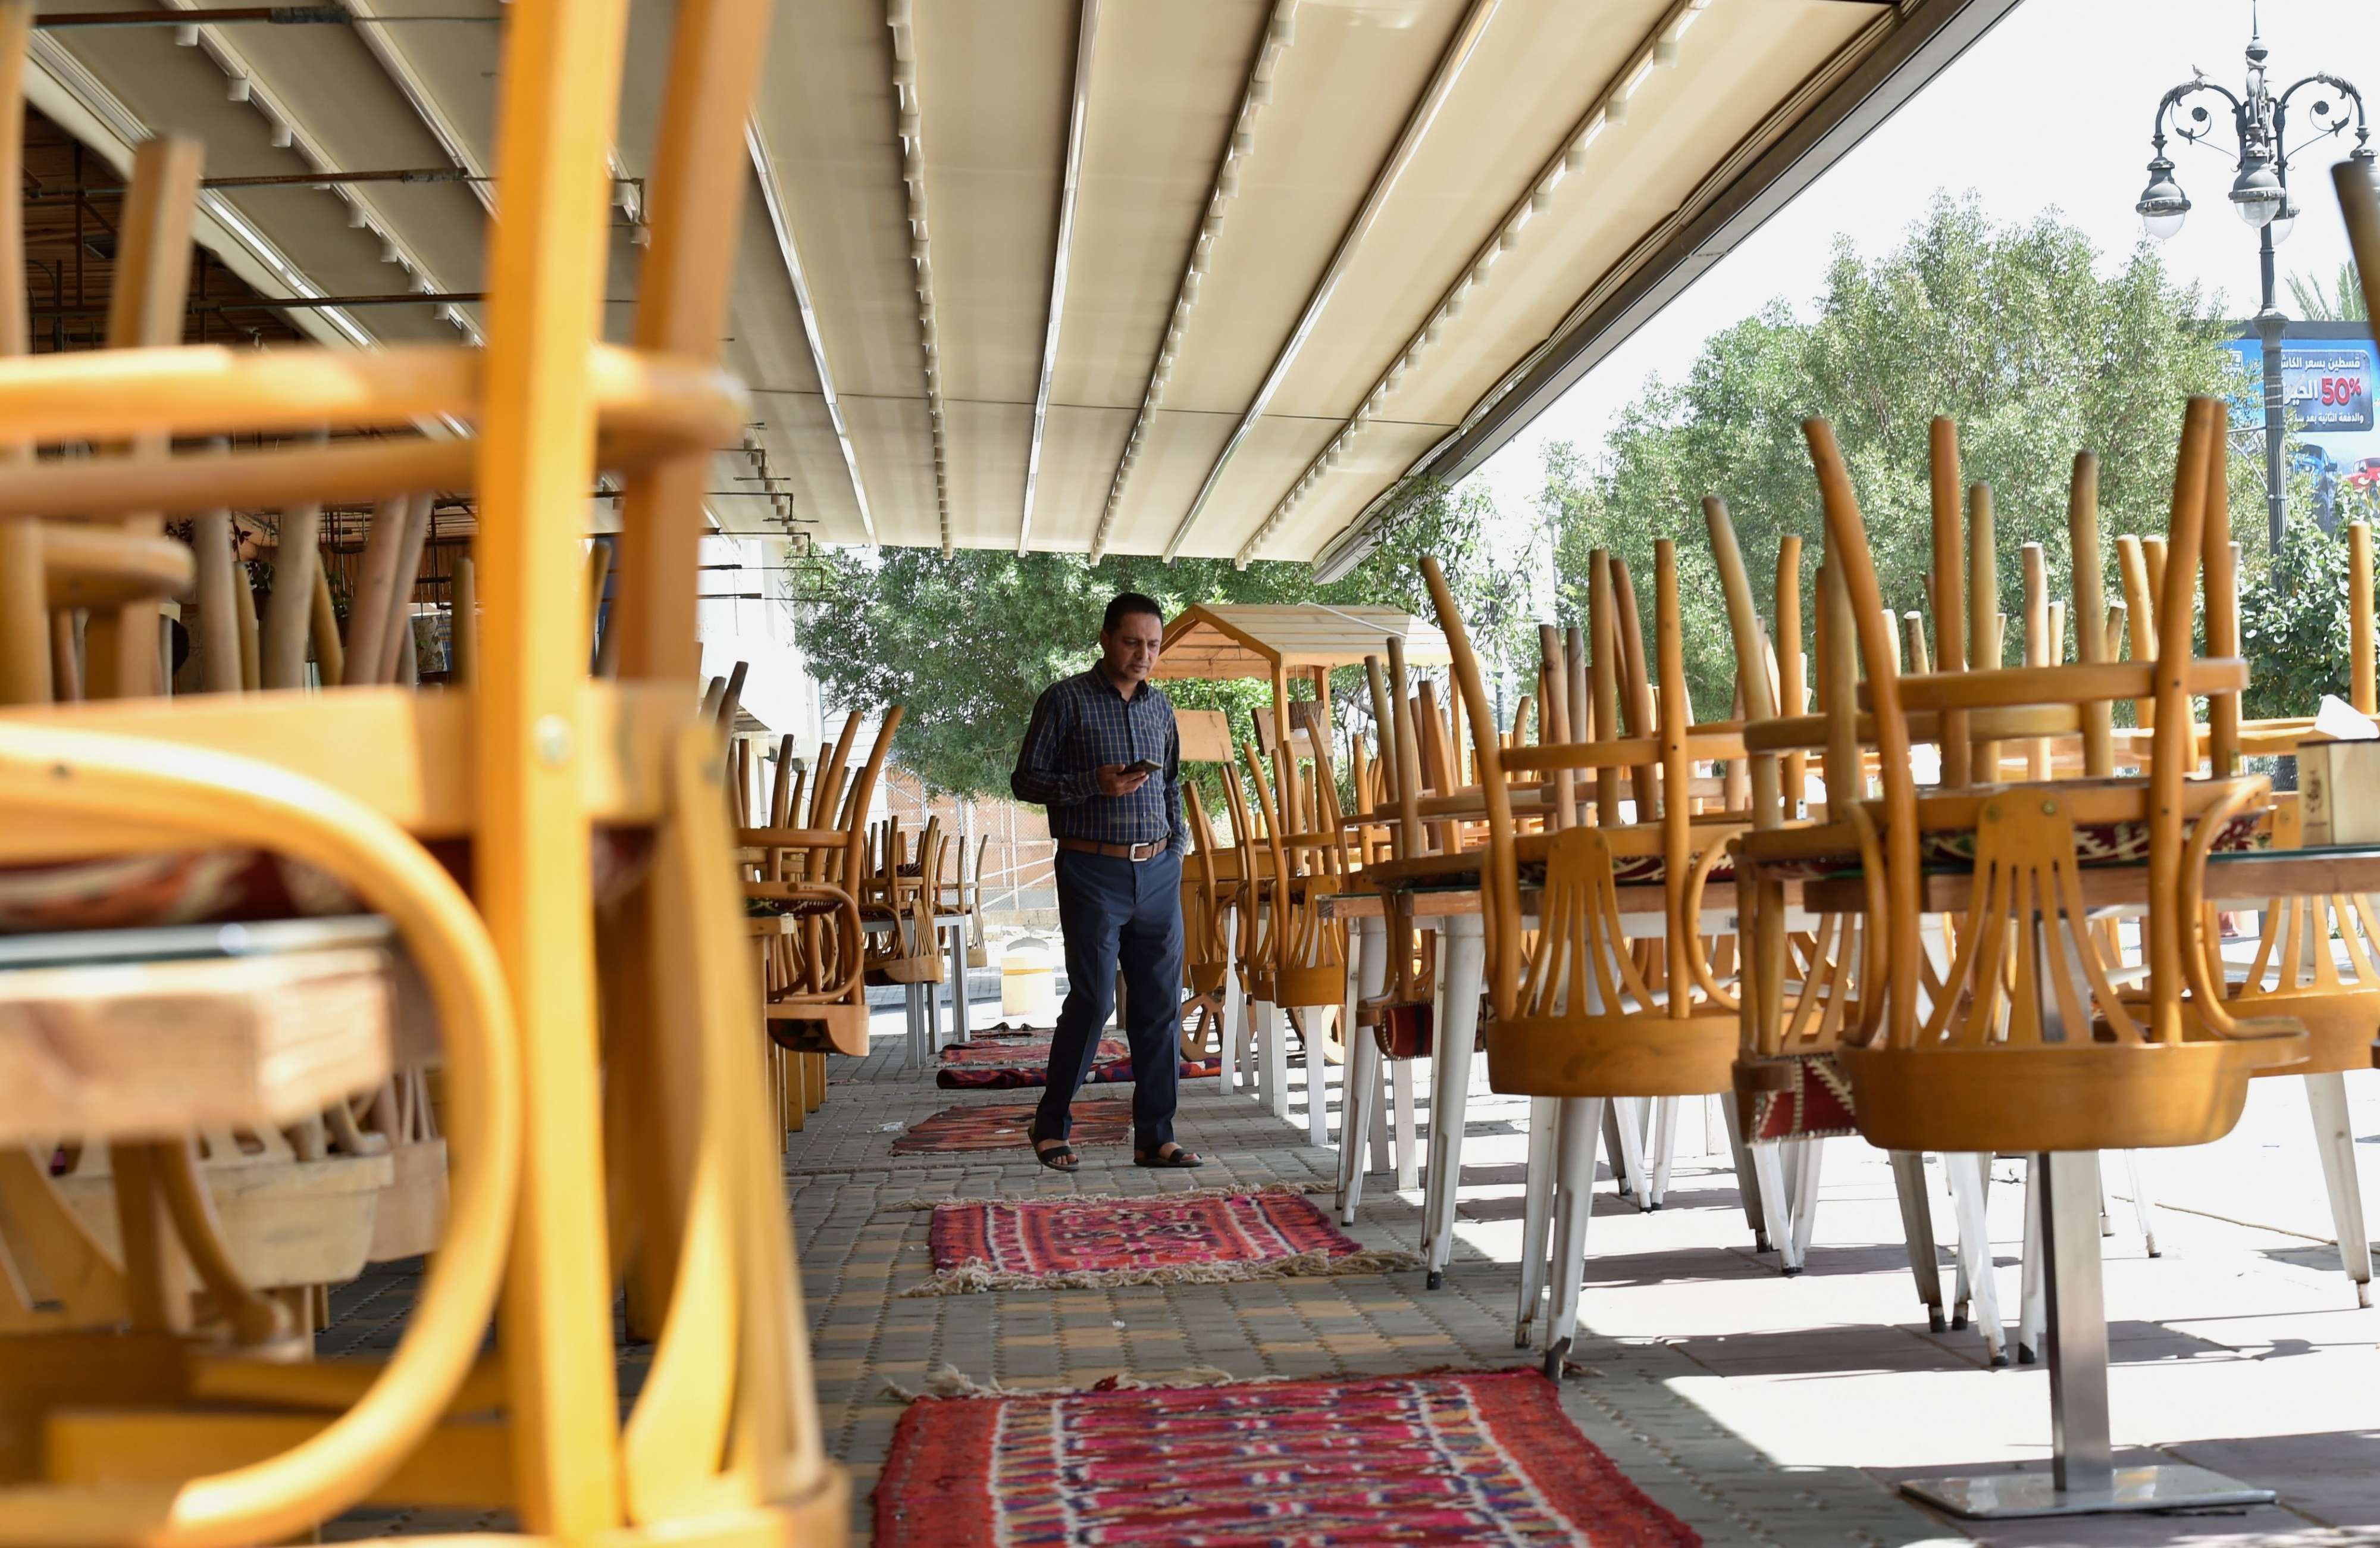 المغرب يغلق المقاهي ويمنع التجمعات لمواجهة كورونا